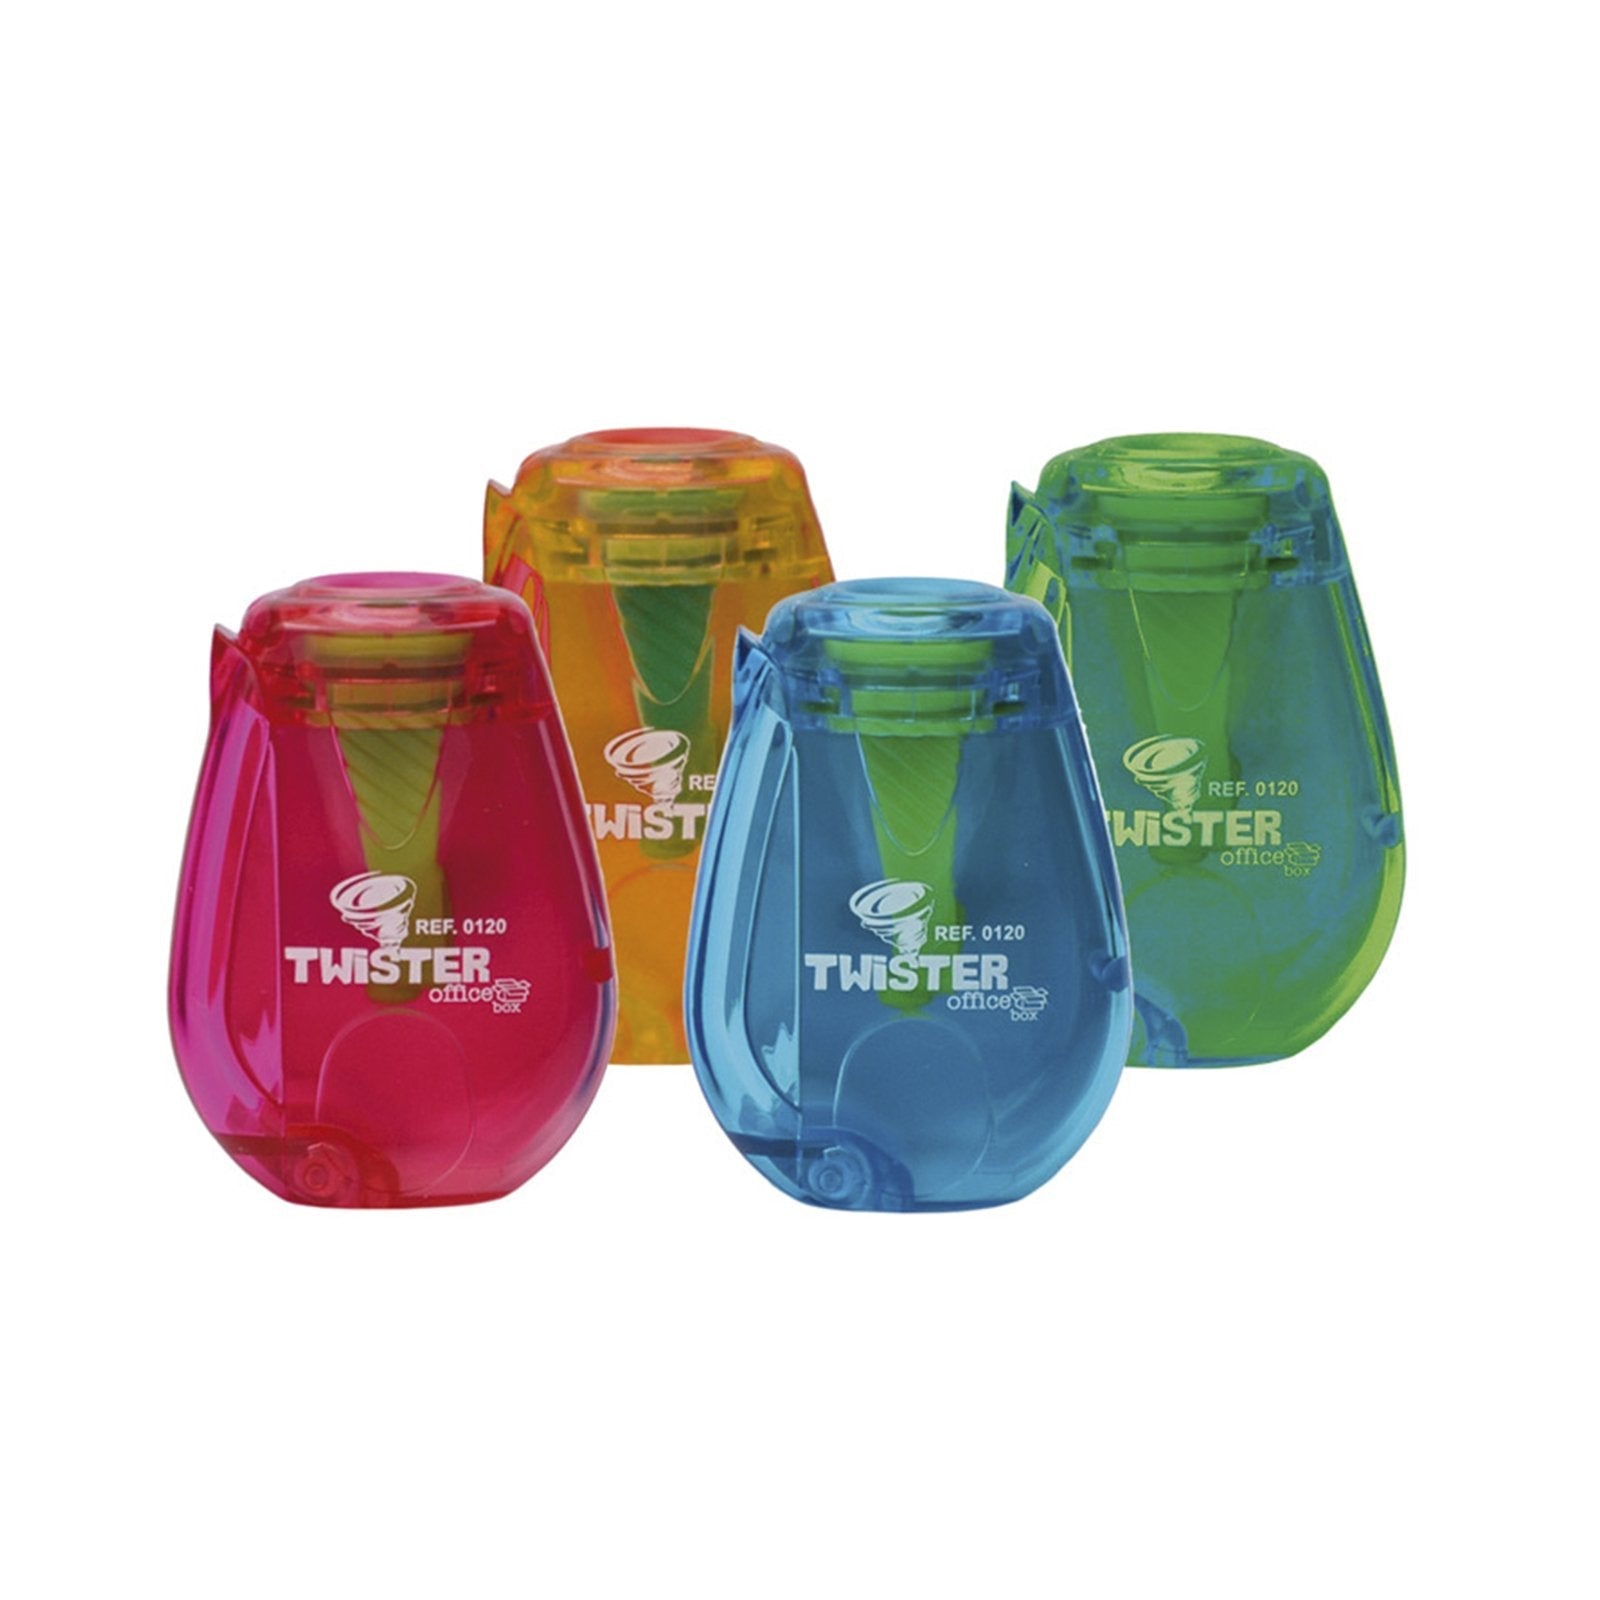 SDI Twister - Sacapuntas con Depósito de Residuos Transparente. Azul